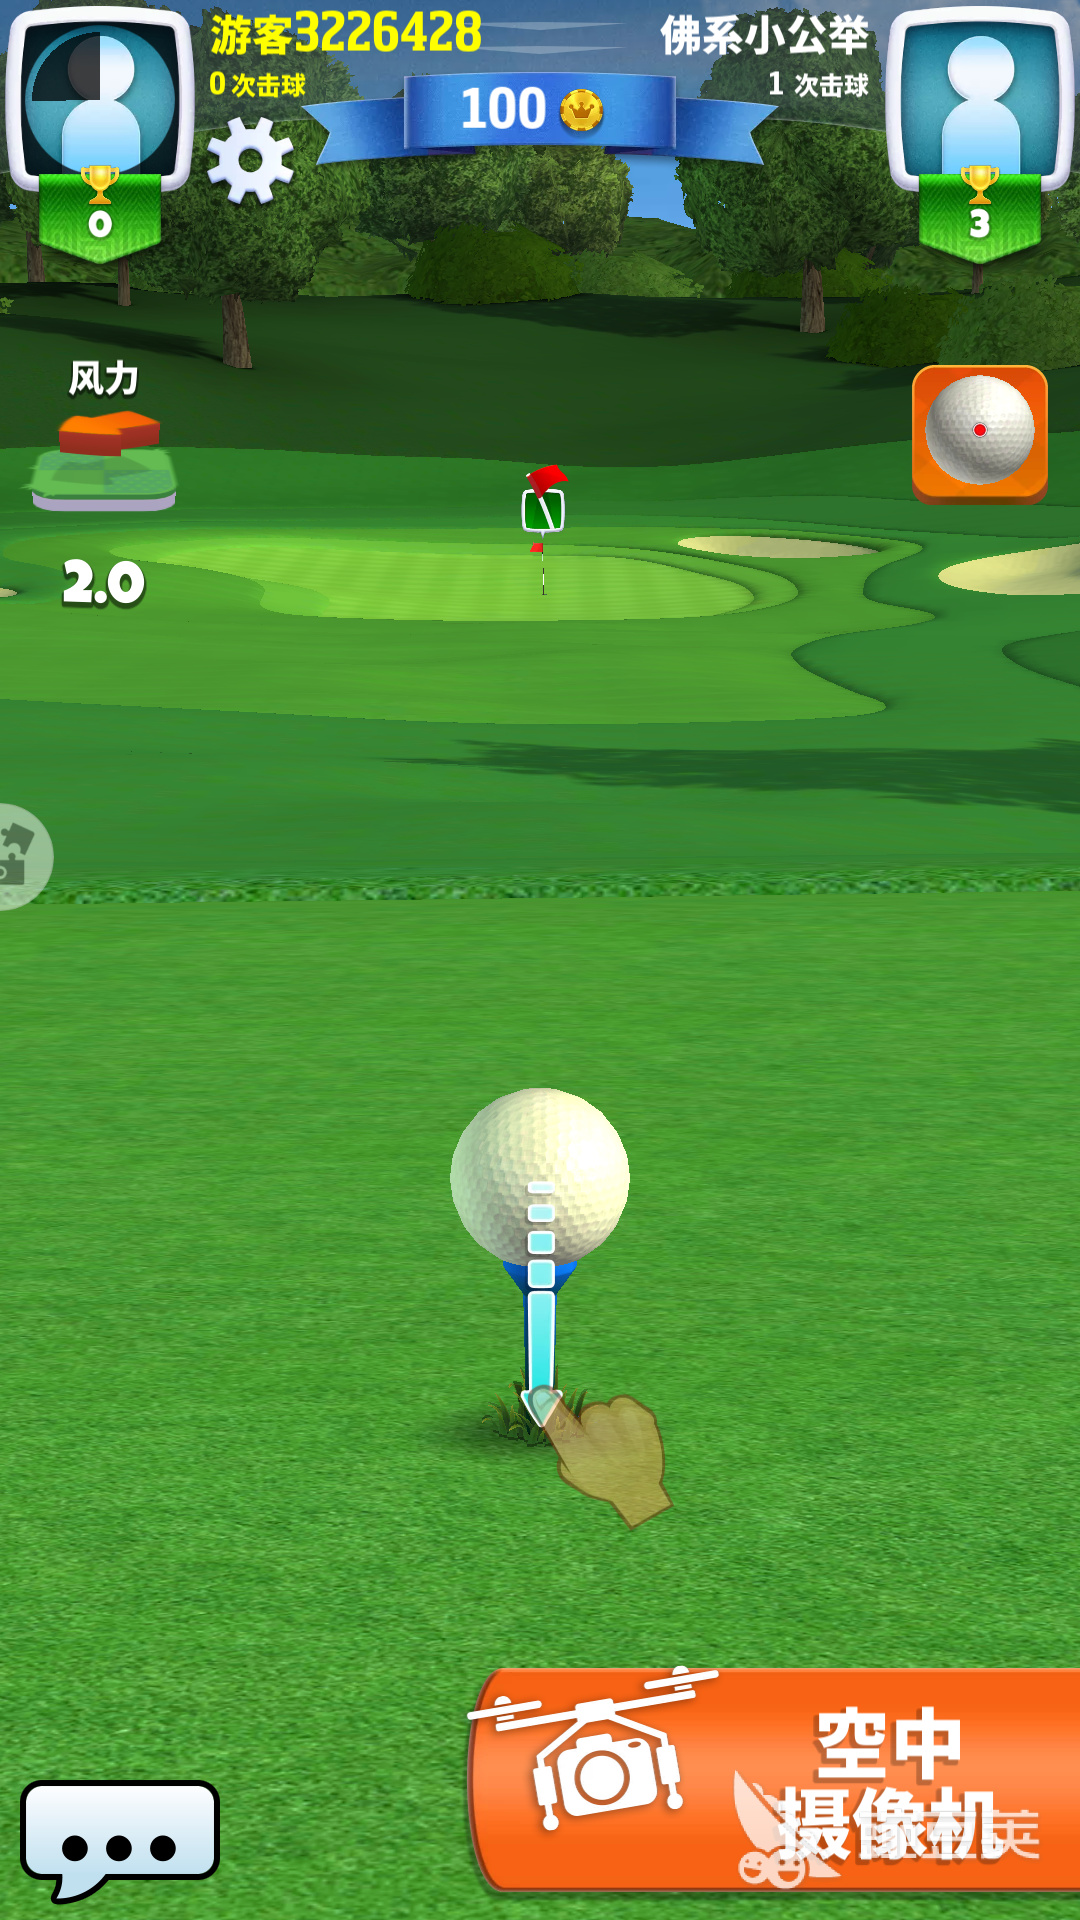 决战高尔夫怎么玩萌新攻略